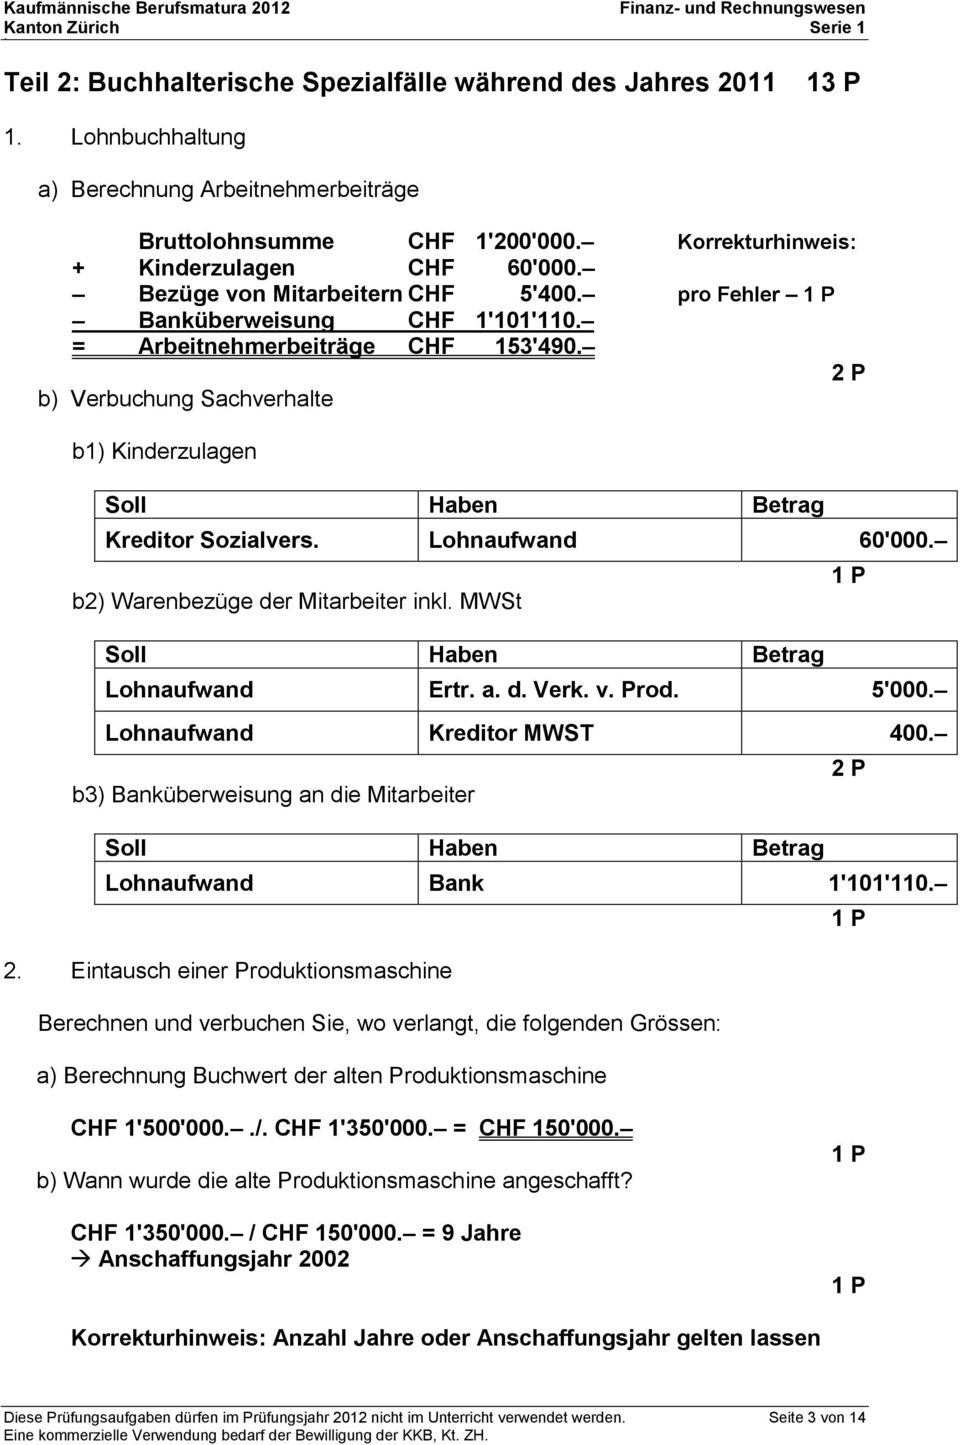 Lohnaufwand 60'000. b) Warenbezüge der Mitarbeiter inkl. MWSt Soll Haben Betrag Lohnaufwand Ertr. a. d. Verk. v. Prod. 5'000. Lohnaufwand Kreditor MWST 400.